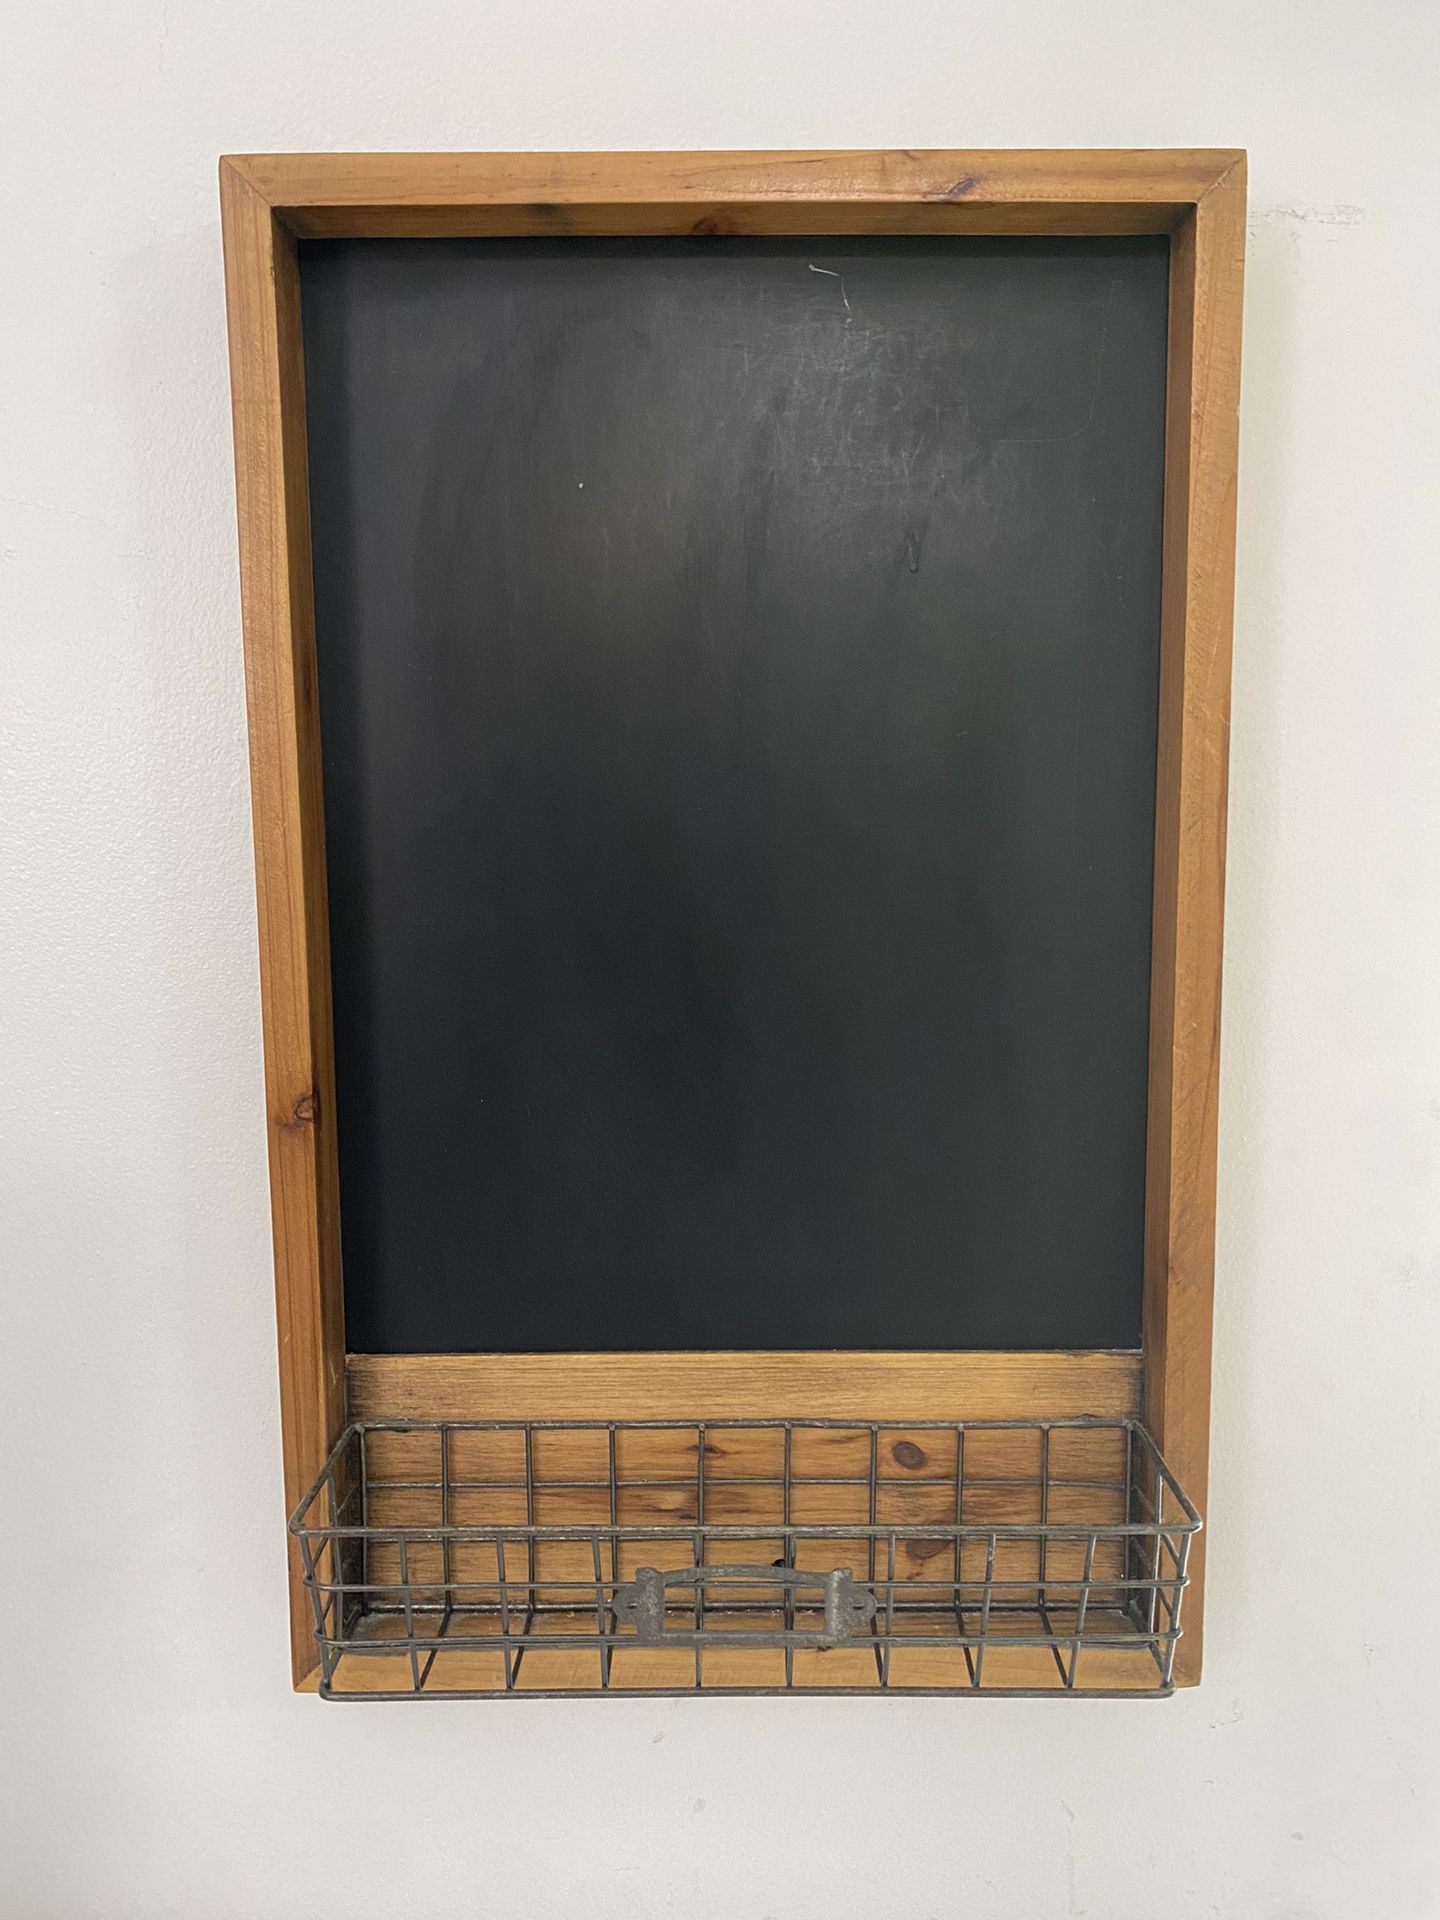 Chalkboard with storage basket - Like New